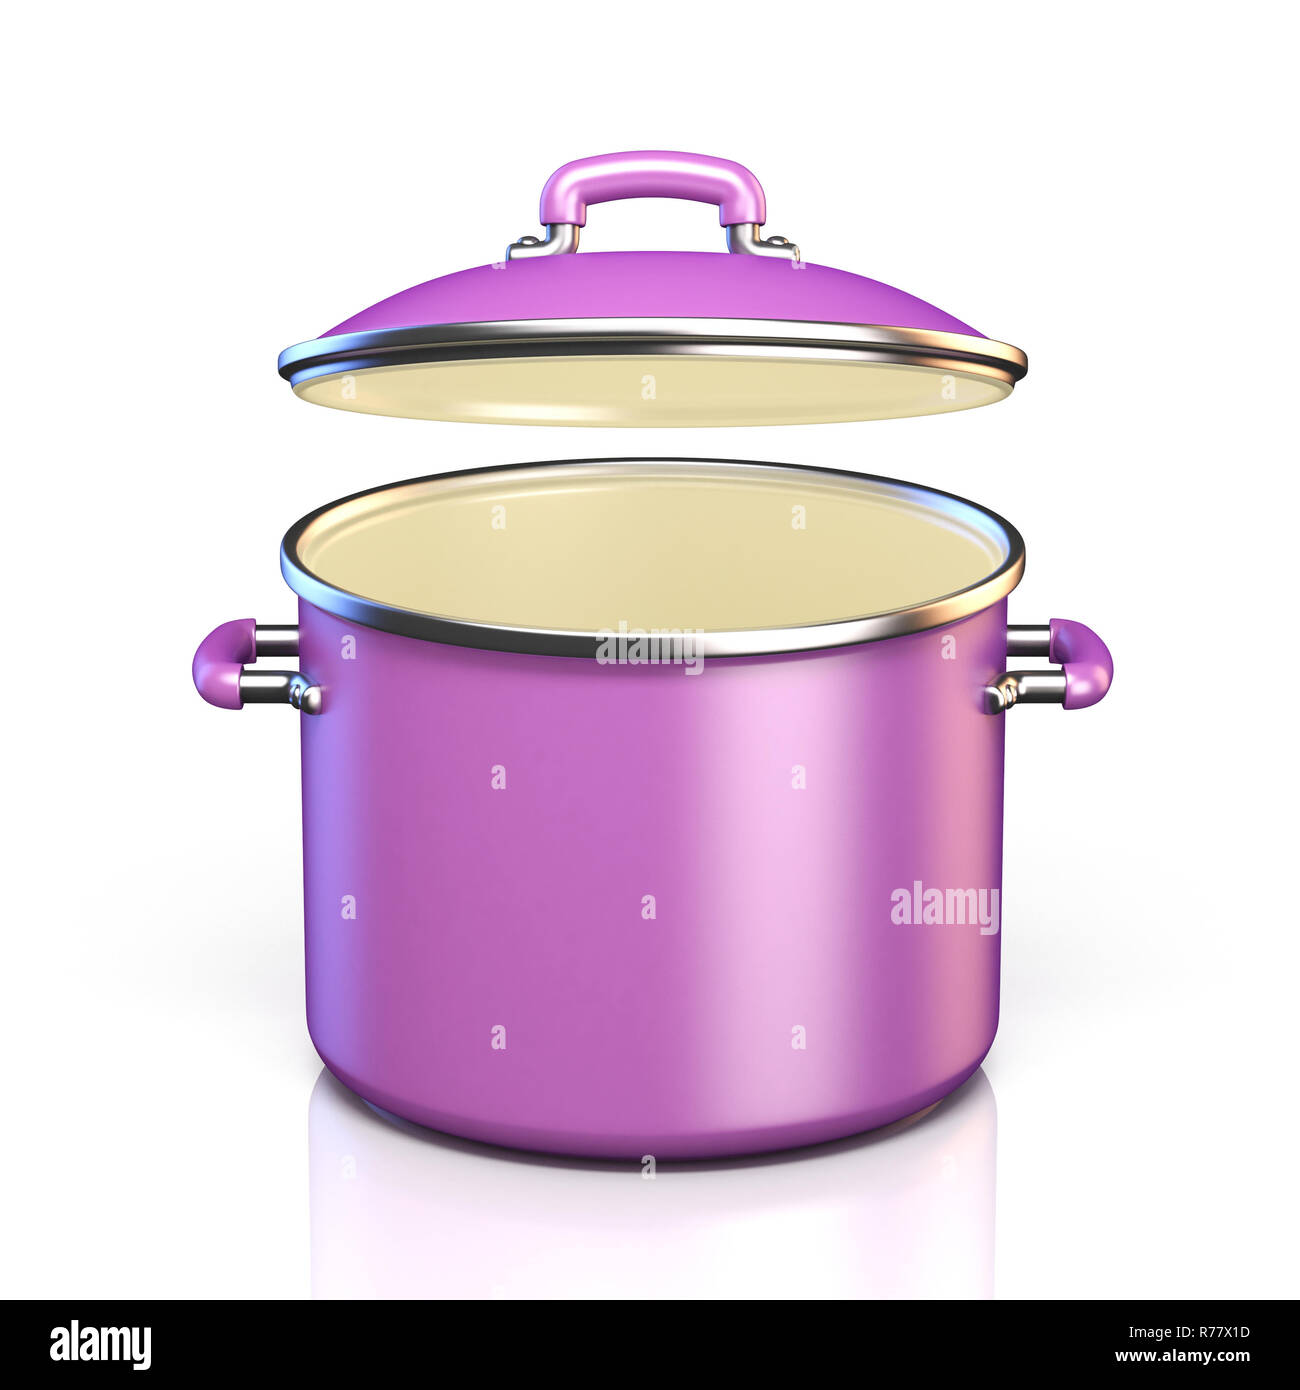 https://c8.alamy.com/comp/R77X1D/purple-cooking-pot-open-lid-3d-render-illustration-R77X1D.jpg